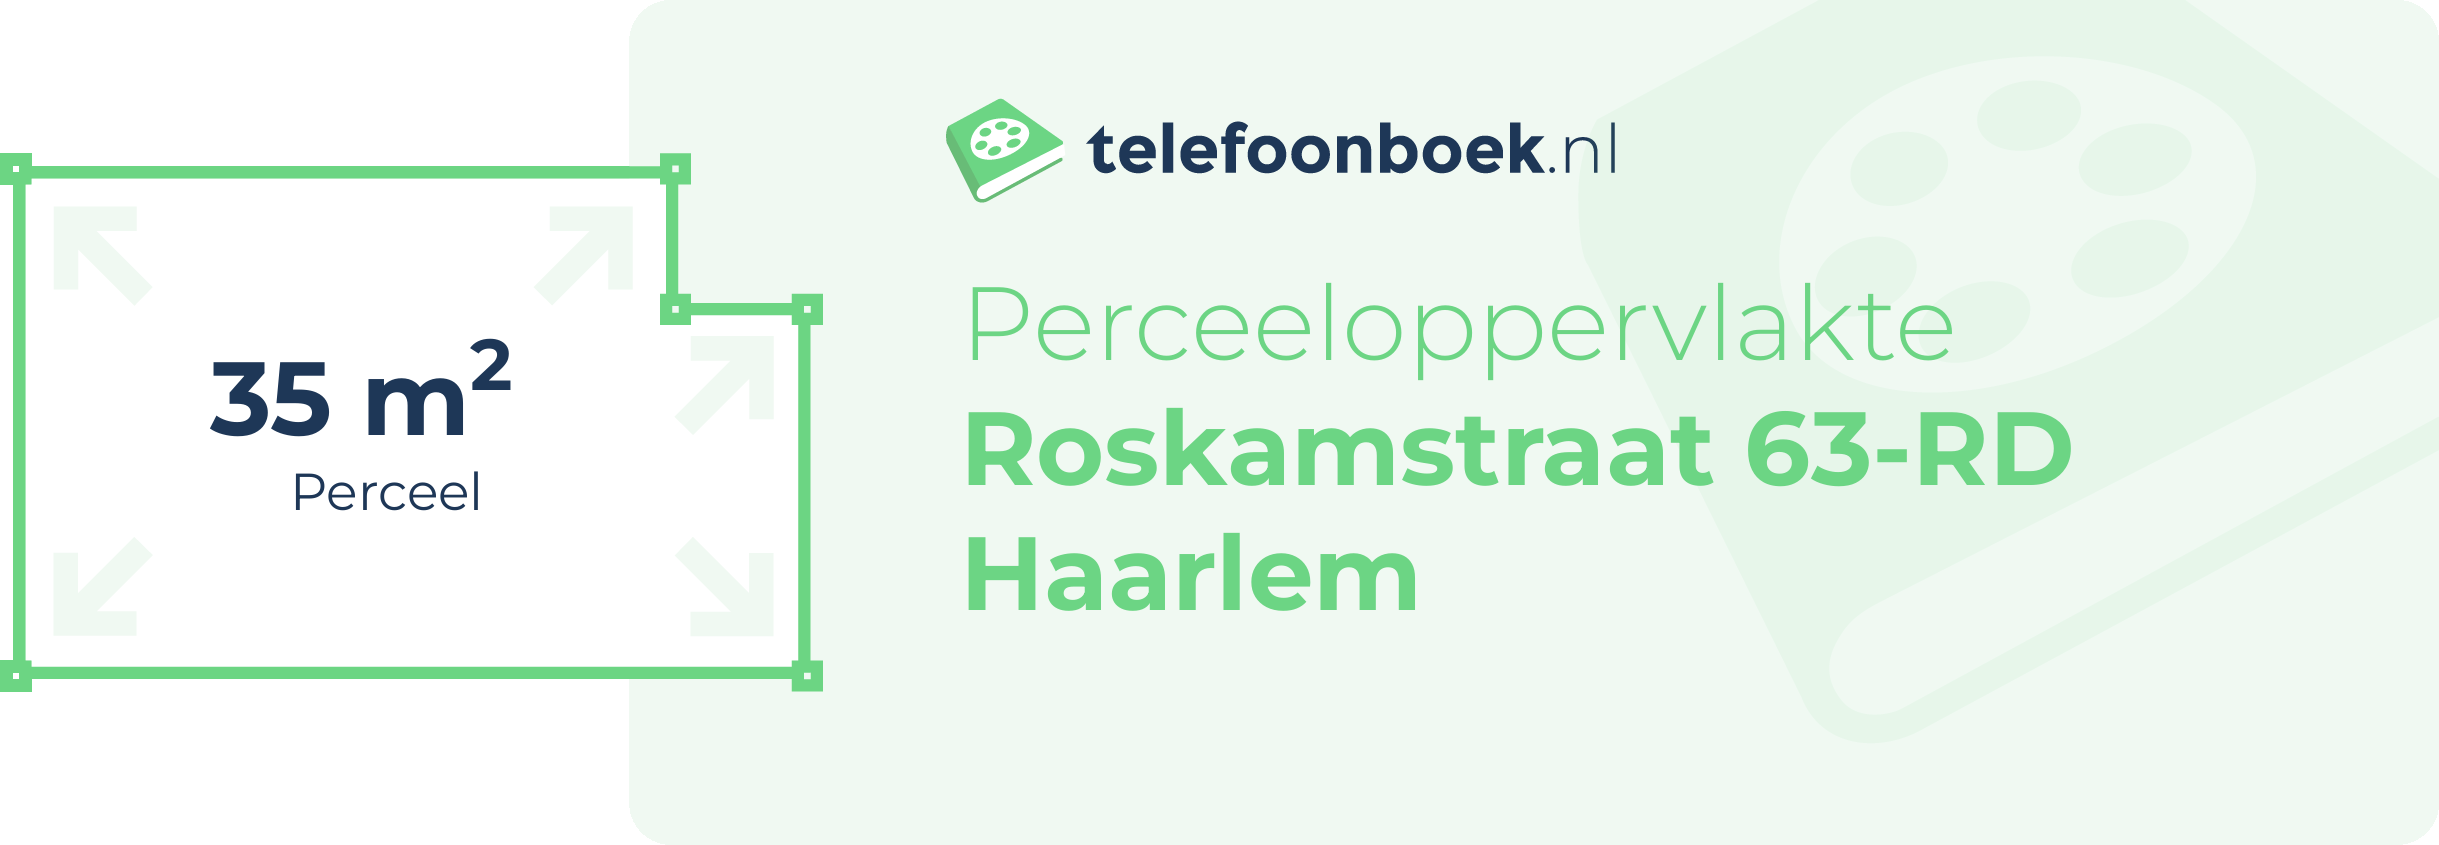 Perceeloppervlakte Roskamstraat 63-RD Haarlem